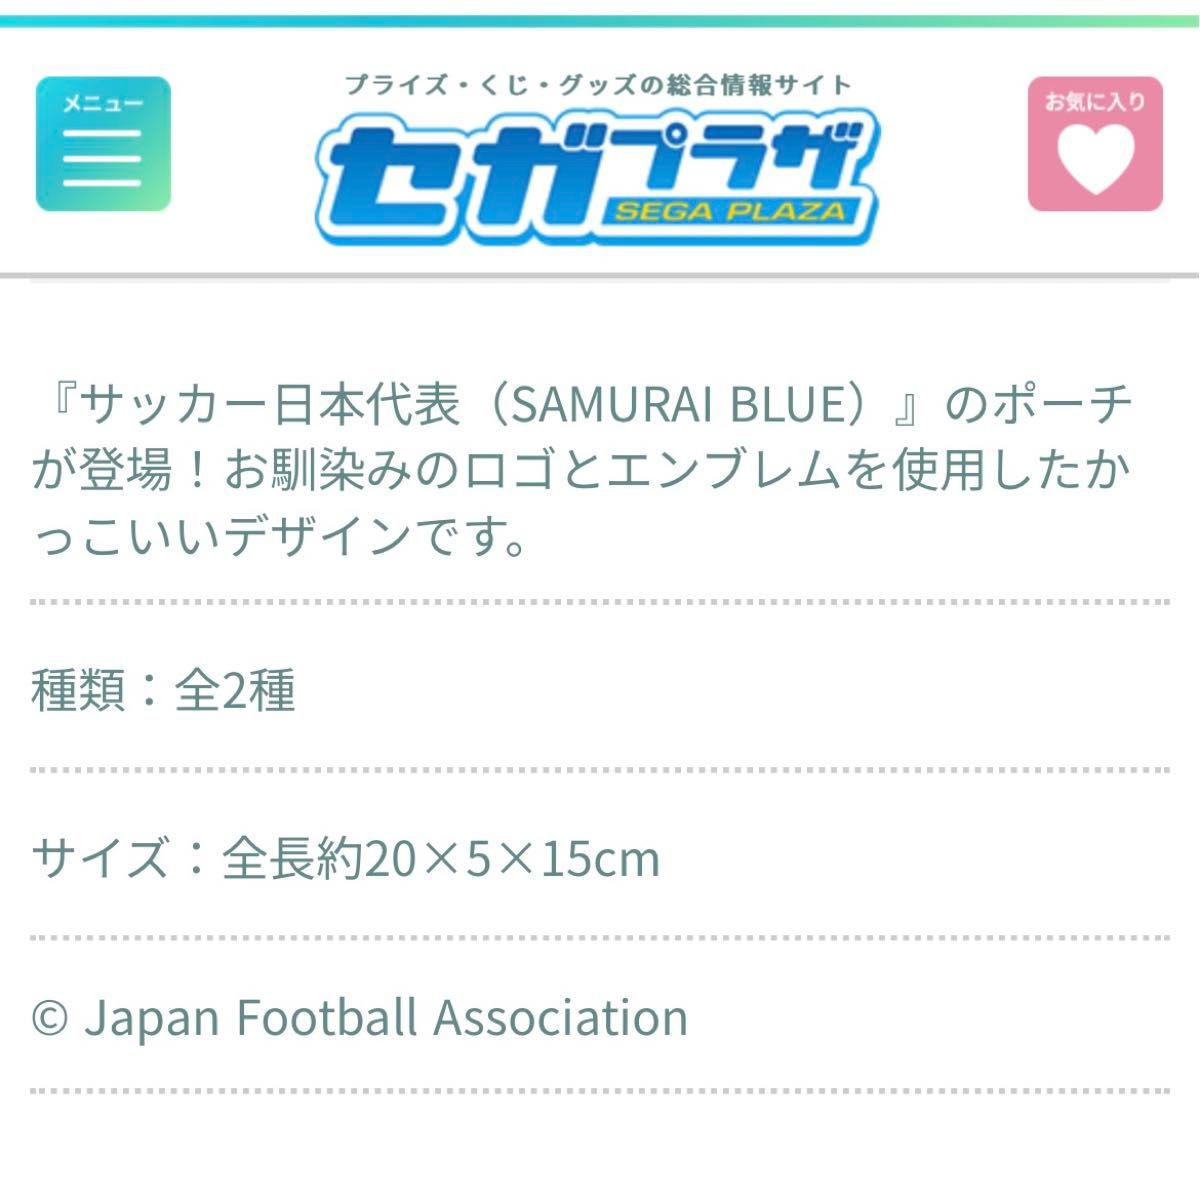 サッカー日本代表 オフィシャルライセンス商品 プレミアムスクエアポーチ 全2種